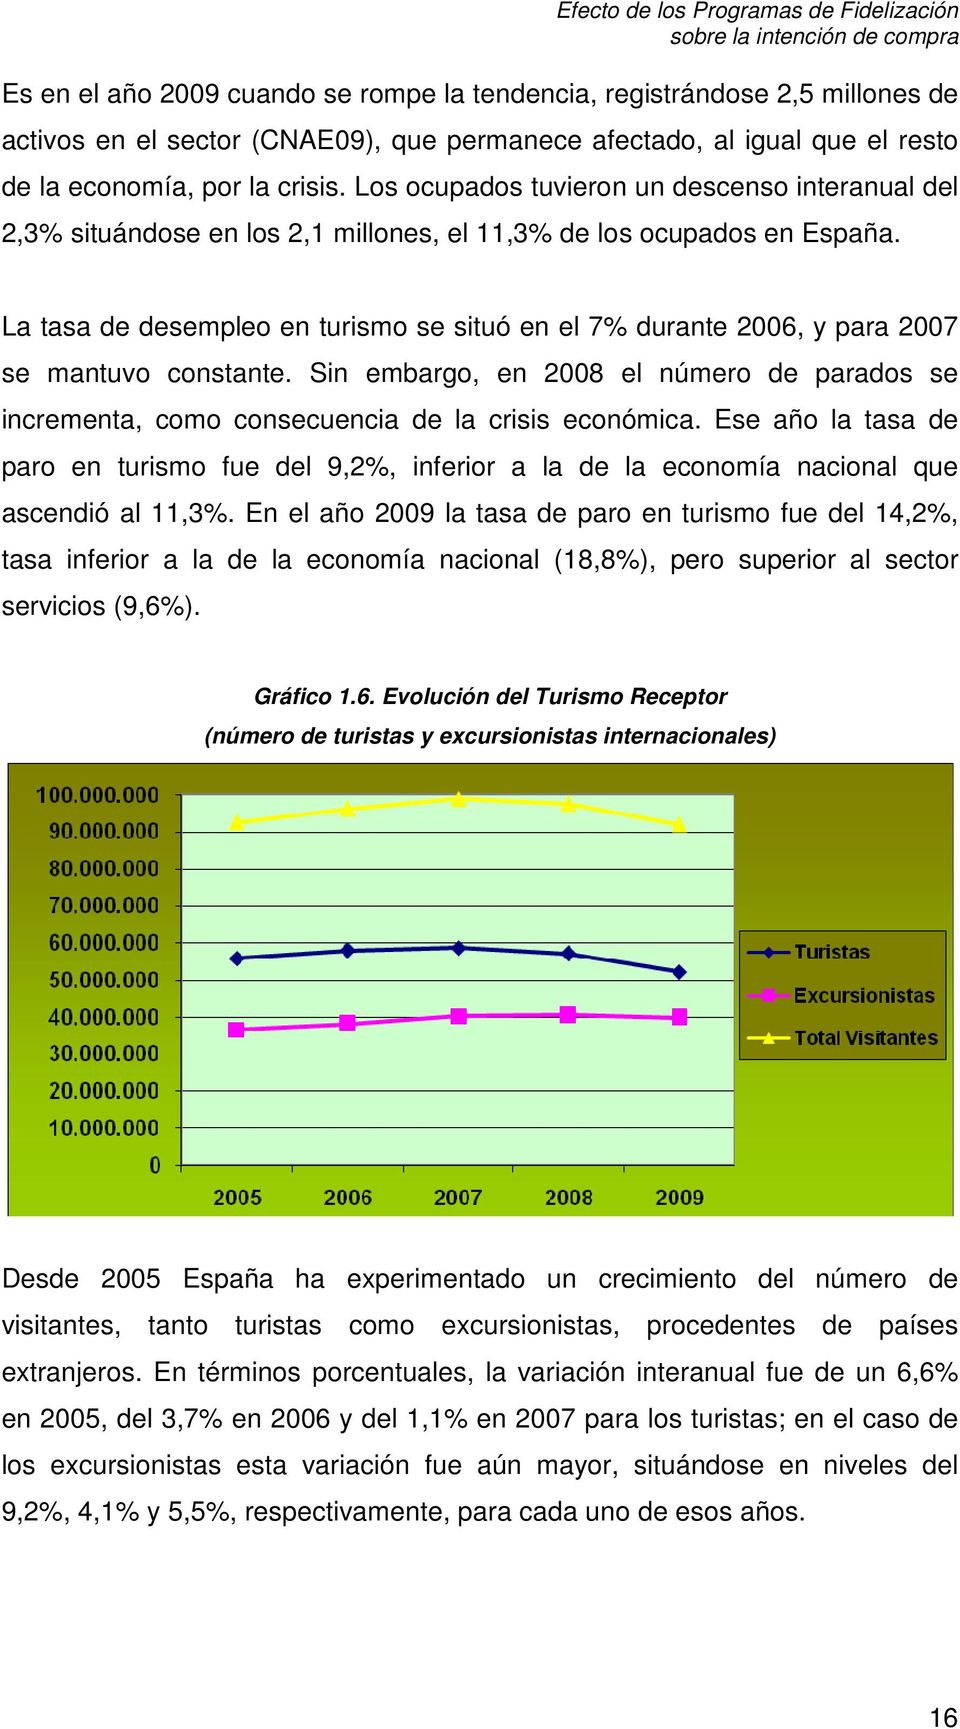 La tasa de desempleo en turismo se situó en el 7% durante 2006, y para 2007 se mantuvo constante. Sin embargo, en 2008 el número de parados se incrementa, como consecuencia de la crisis económica.